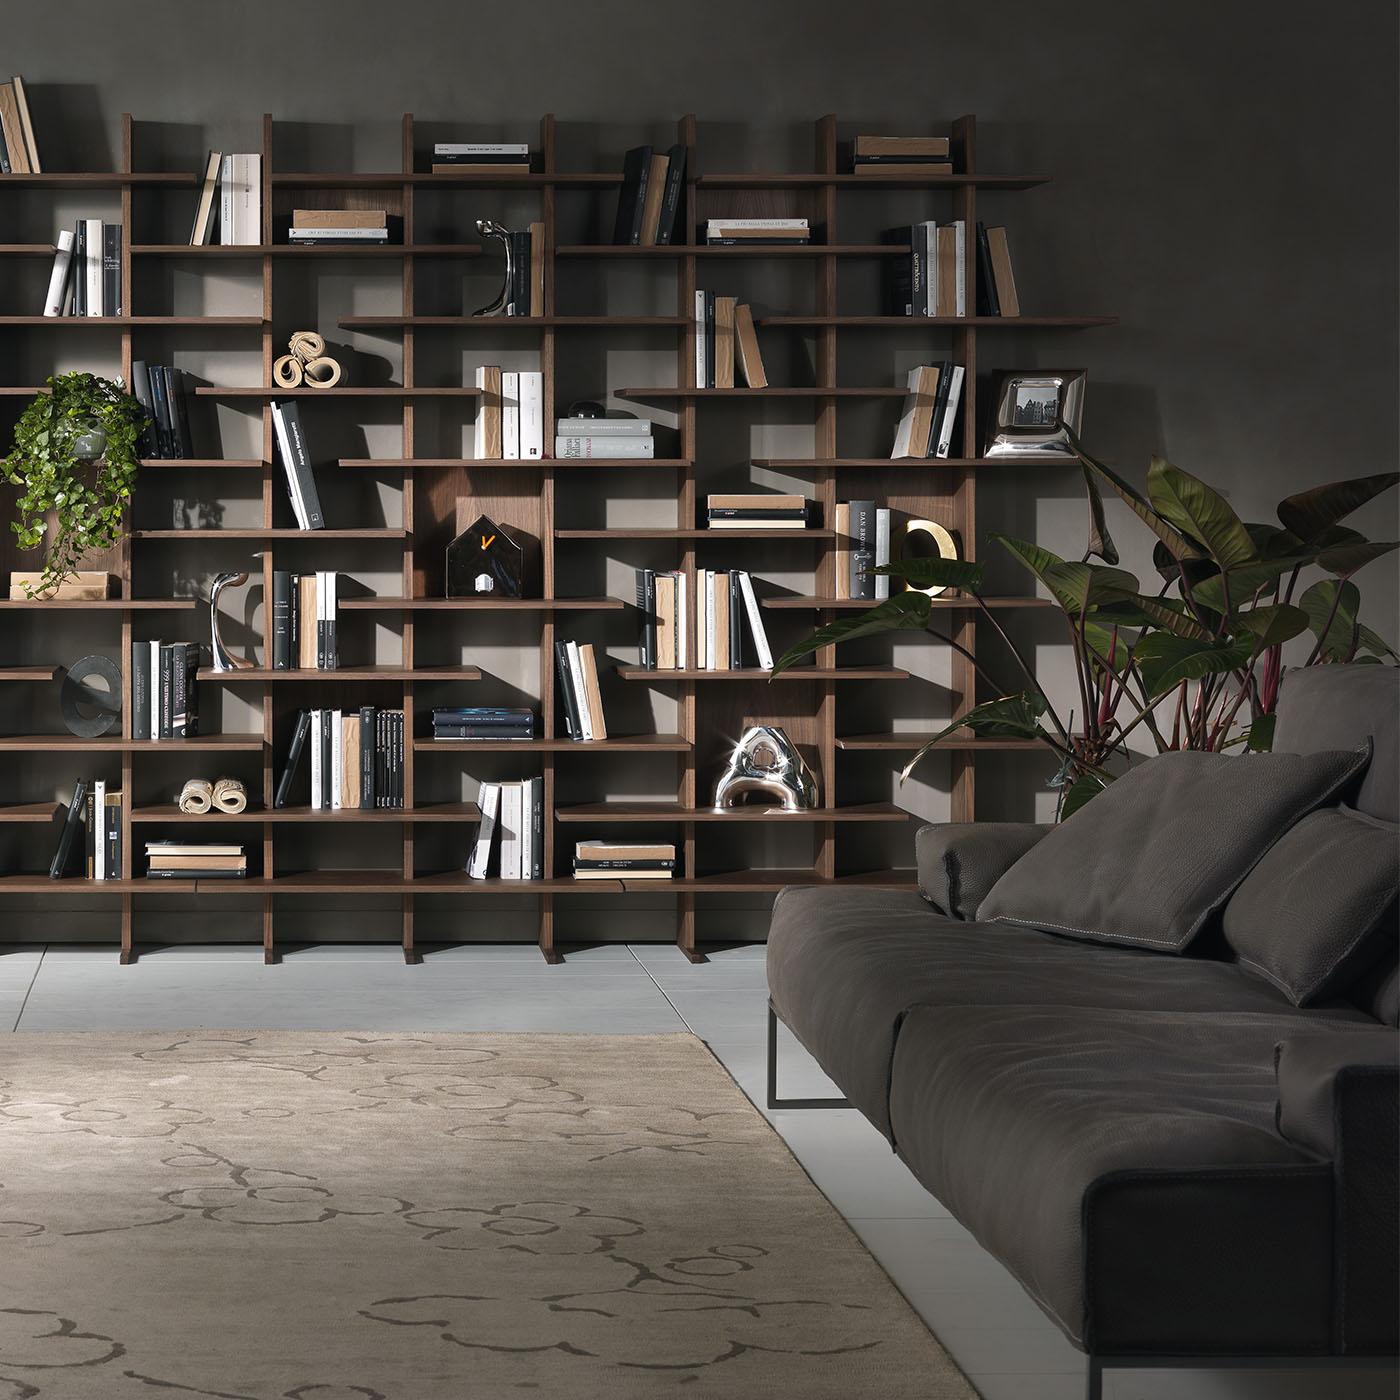 Conçue par Cesar Arosio et Beatrice Fanchini, cette bibliothèque modulaire à deux faces constitue un ajout élégant à un espace de vie ou d'étude contemporain. Elle présente un design contemporain à la fois épuré et sculptural, fabriqué à la main en